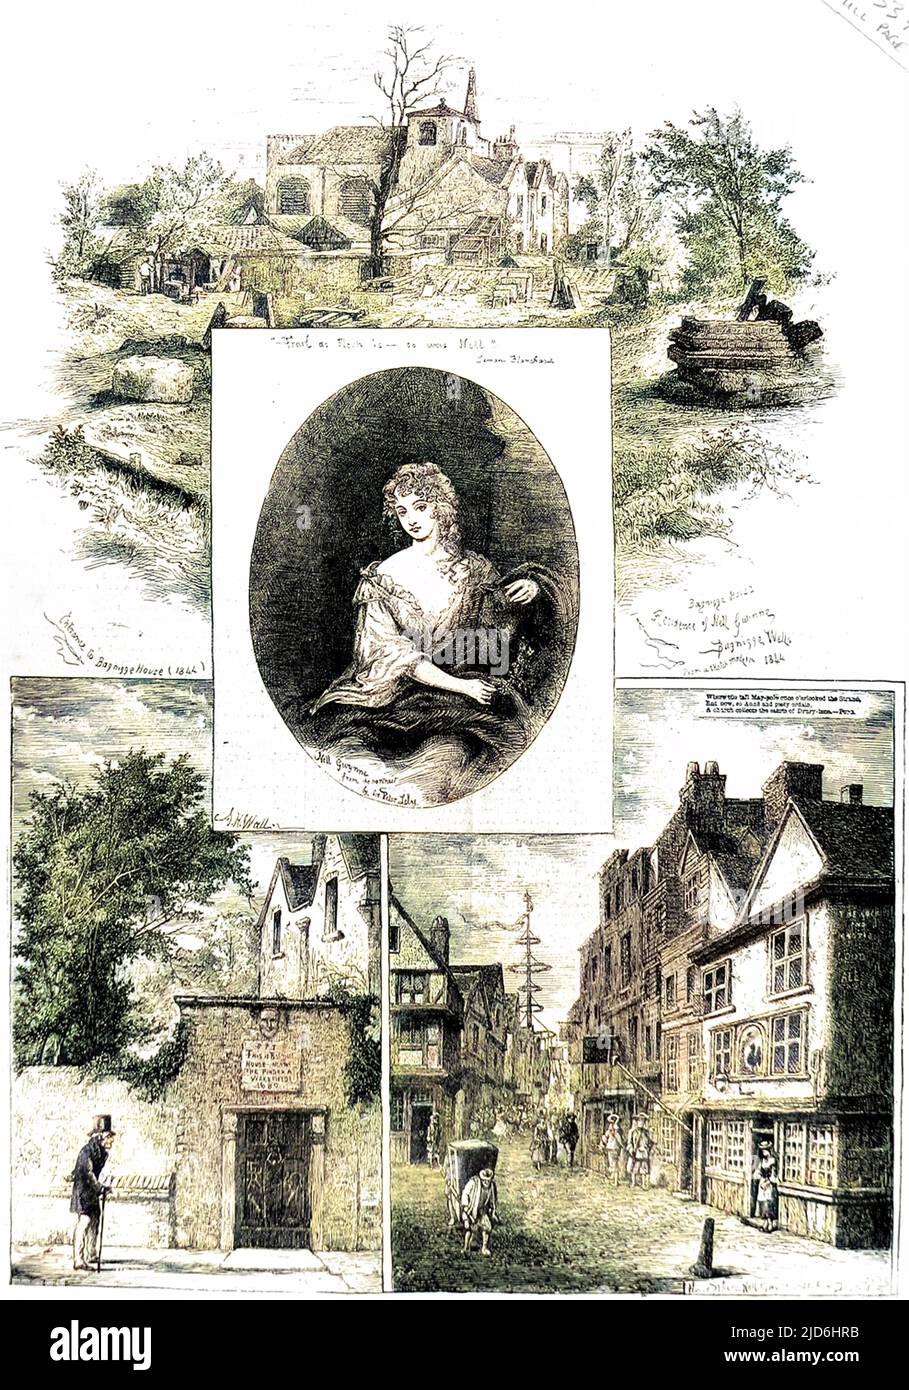 Nell Gwynn (1650 - 1687), die englische Schauspielerin und Geliebte von König Karl II., und zwei der Häuser, in denen sie lebte. Die Bilder oben und unten links zeigen das Bagnigge House, Bagnigge Wells, im Jahr 1844. Das Bild unten rechts zeigt das Haus in der Drury Lane, in dem Nell lebte. Kolorierte Version von: 10221474 Stockfoto